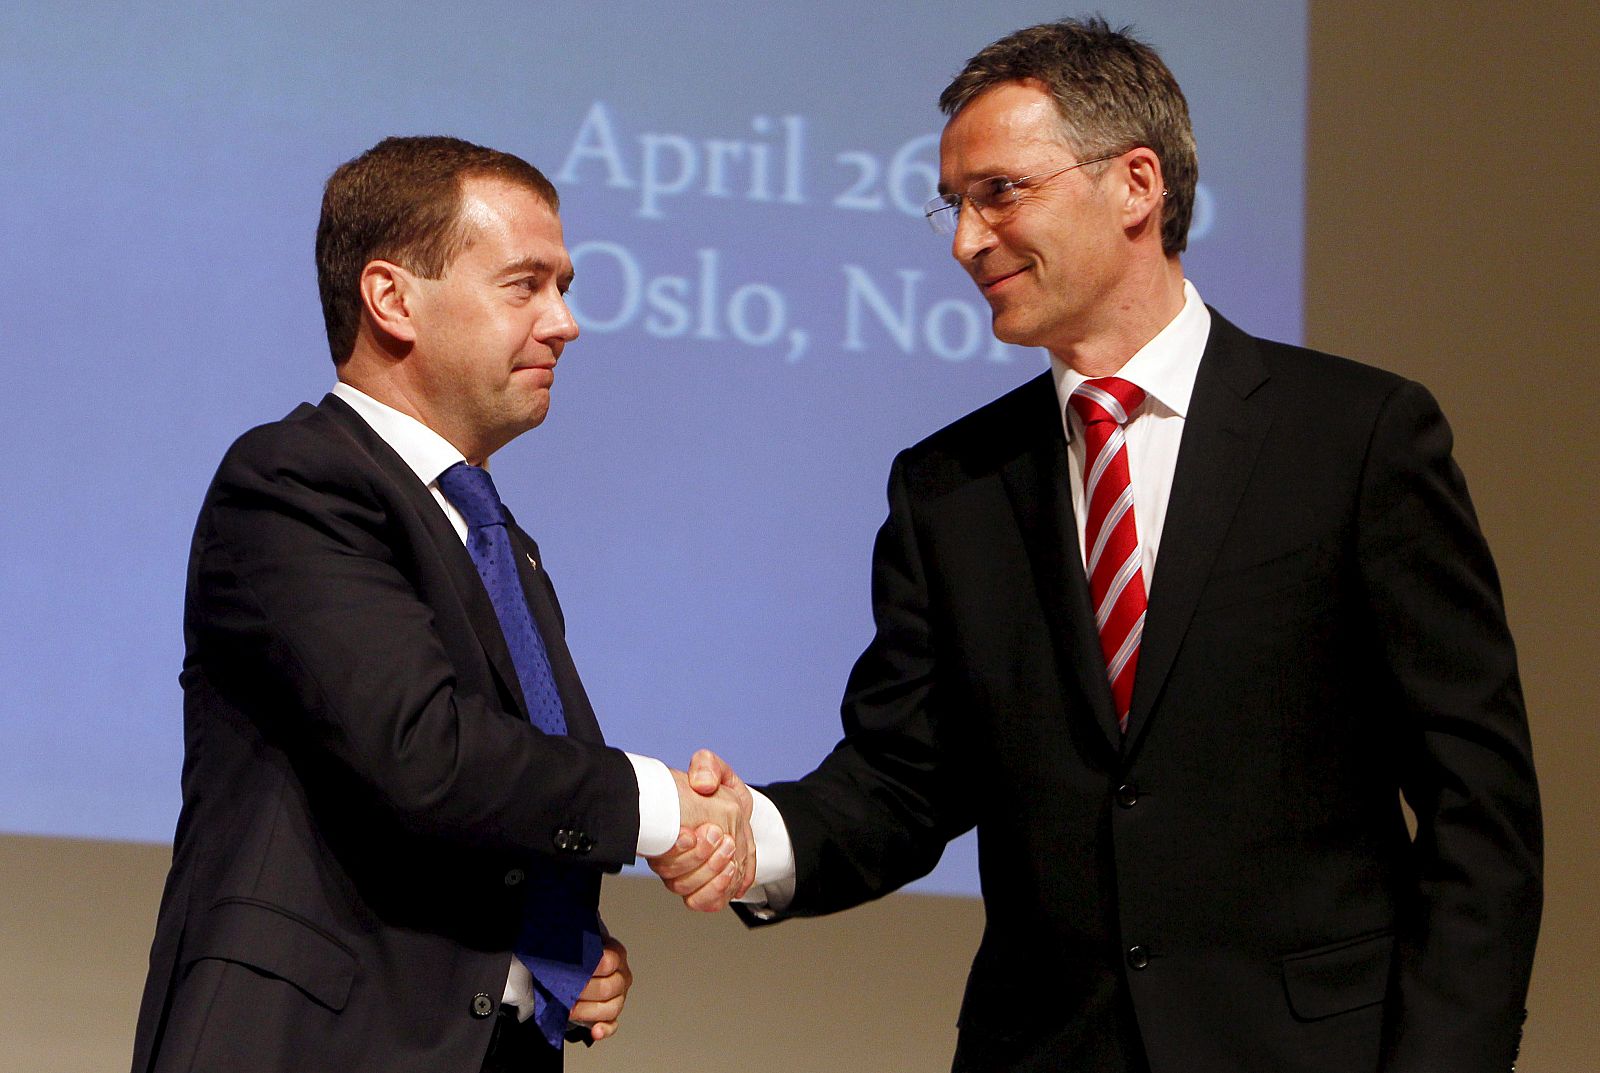 El presidente ruso, Dmitry Medvedev estrecha la mano del primer ministro noruego, Jens Stoltenberg en Oslo